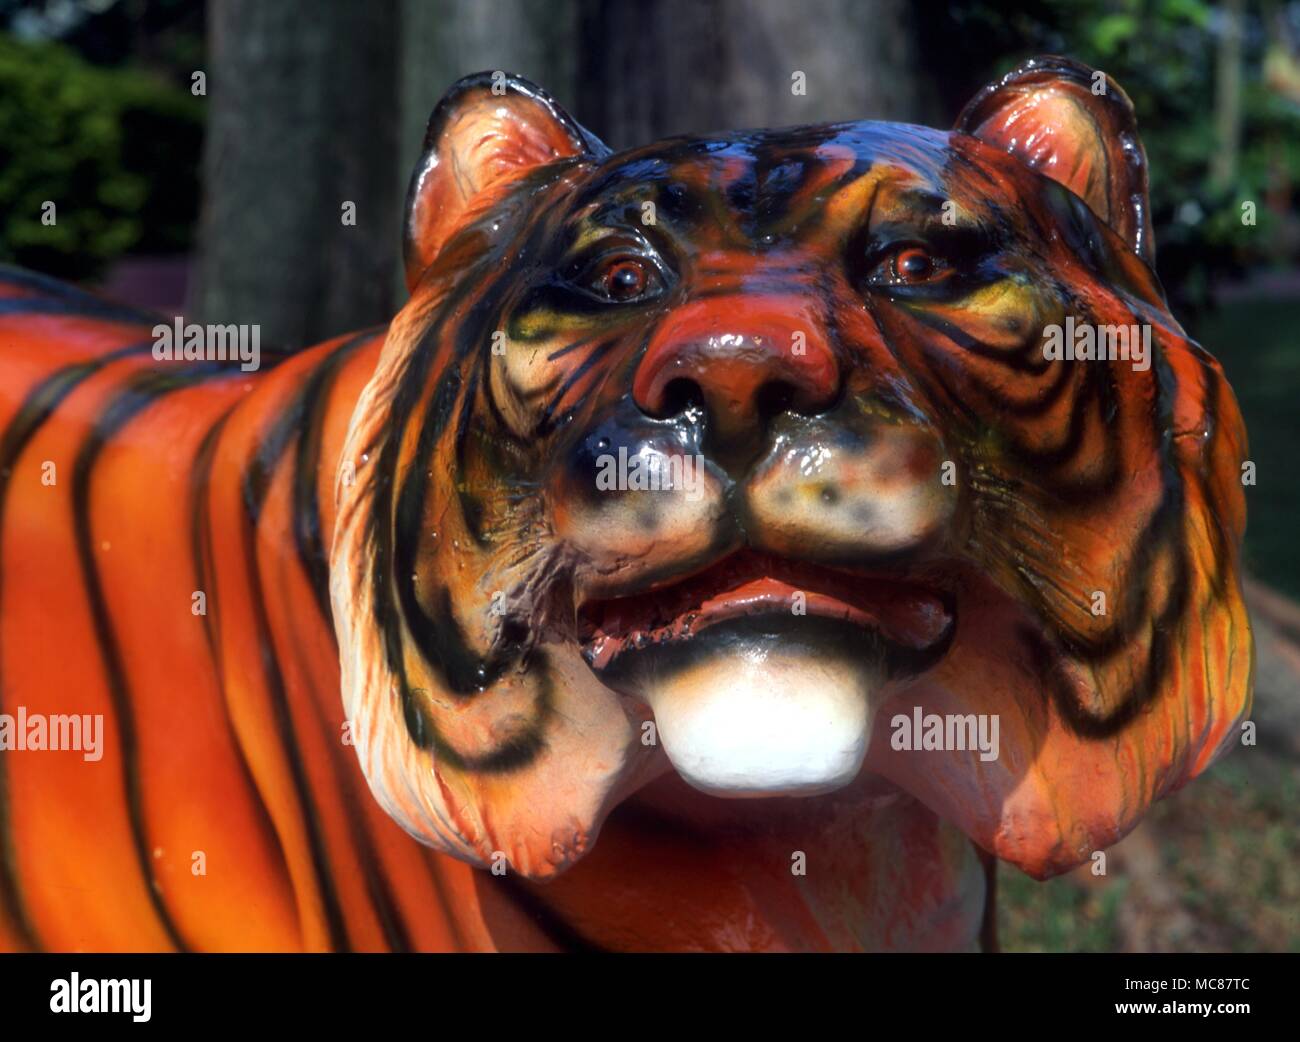 Mitologia cinese la testa di tigre della tigre cinese di soggetto mitologico in Haw Par Villa (Tiger Balm Park) in Singapore Foto Stock